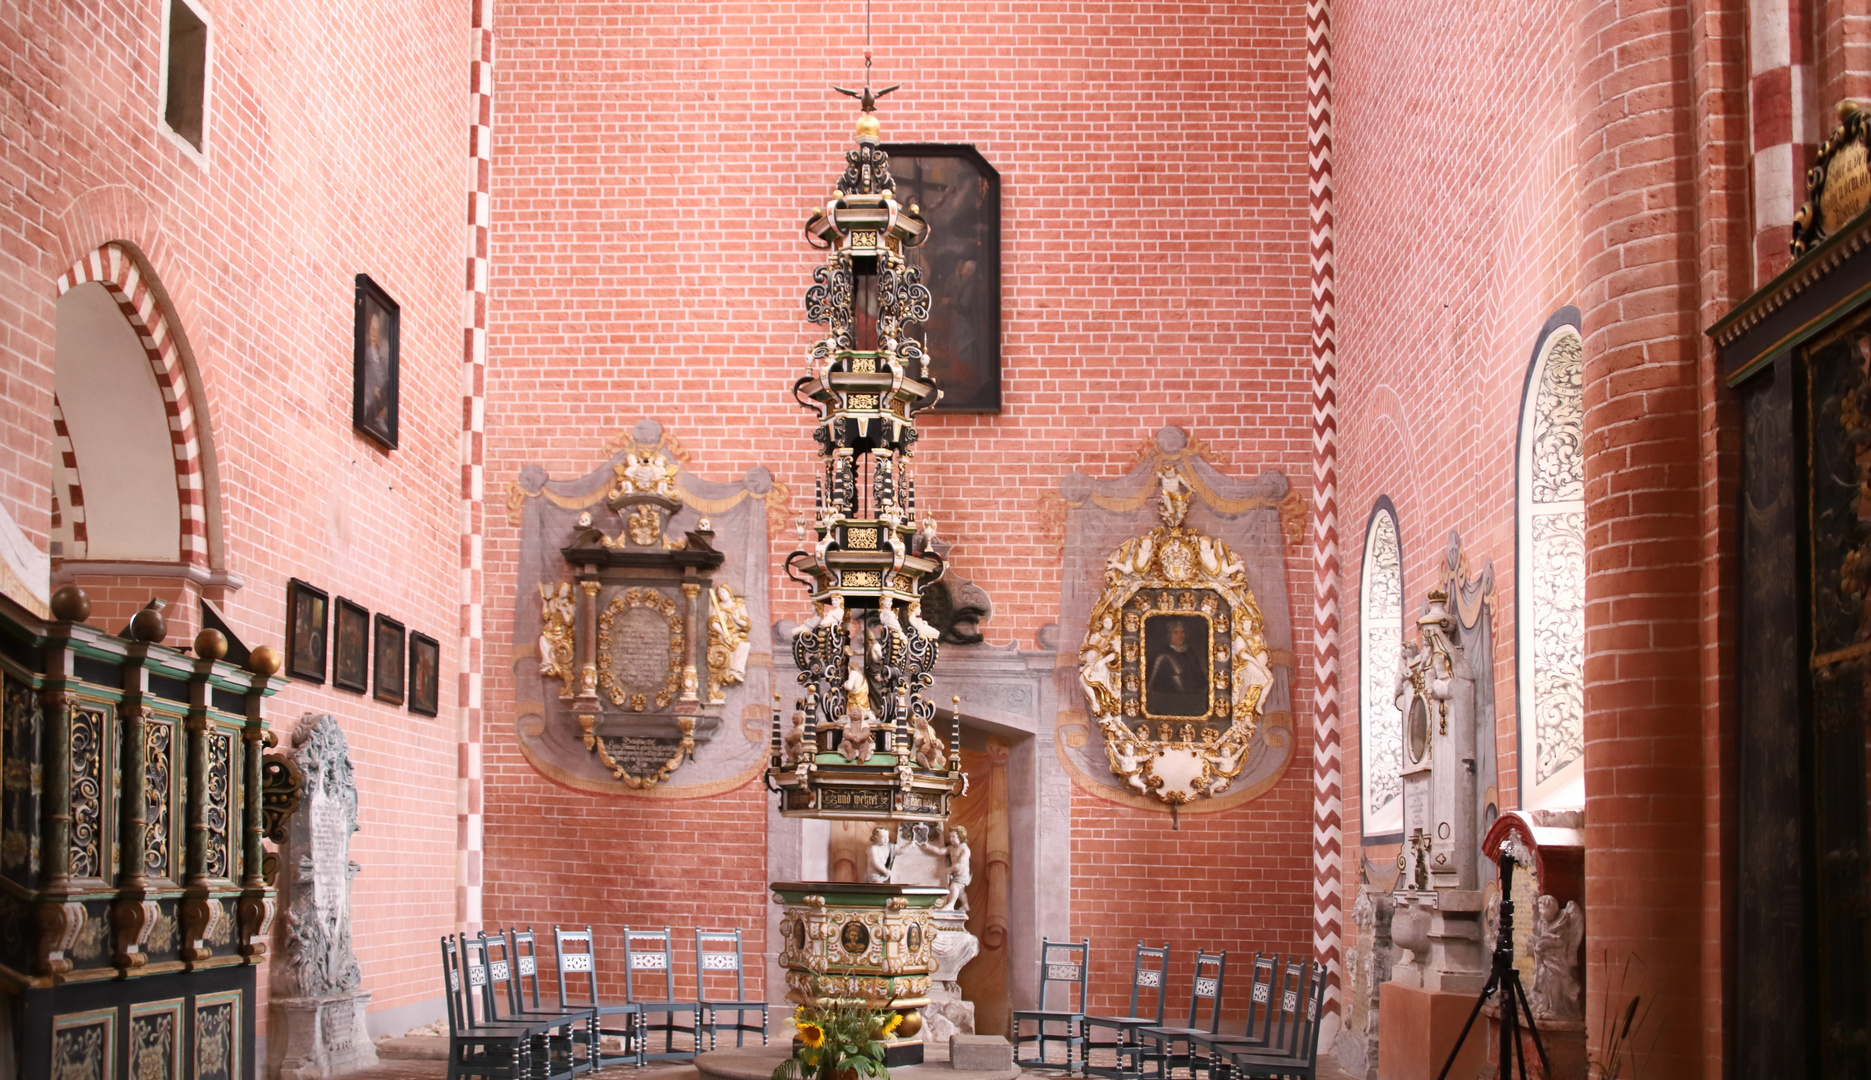 Sechseckiger Taufstein  in der Klosterkirche Doberlug